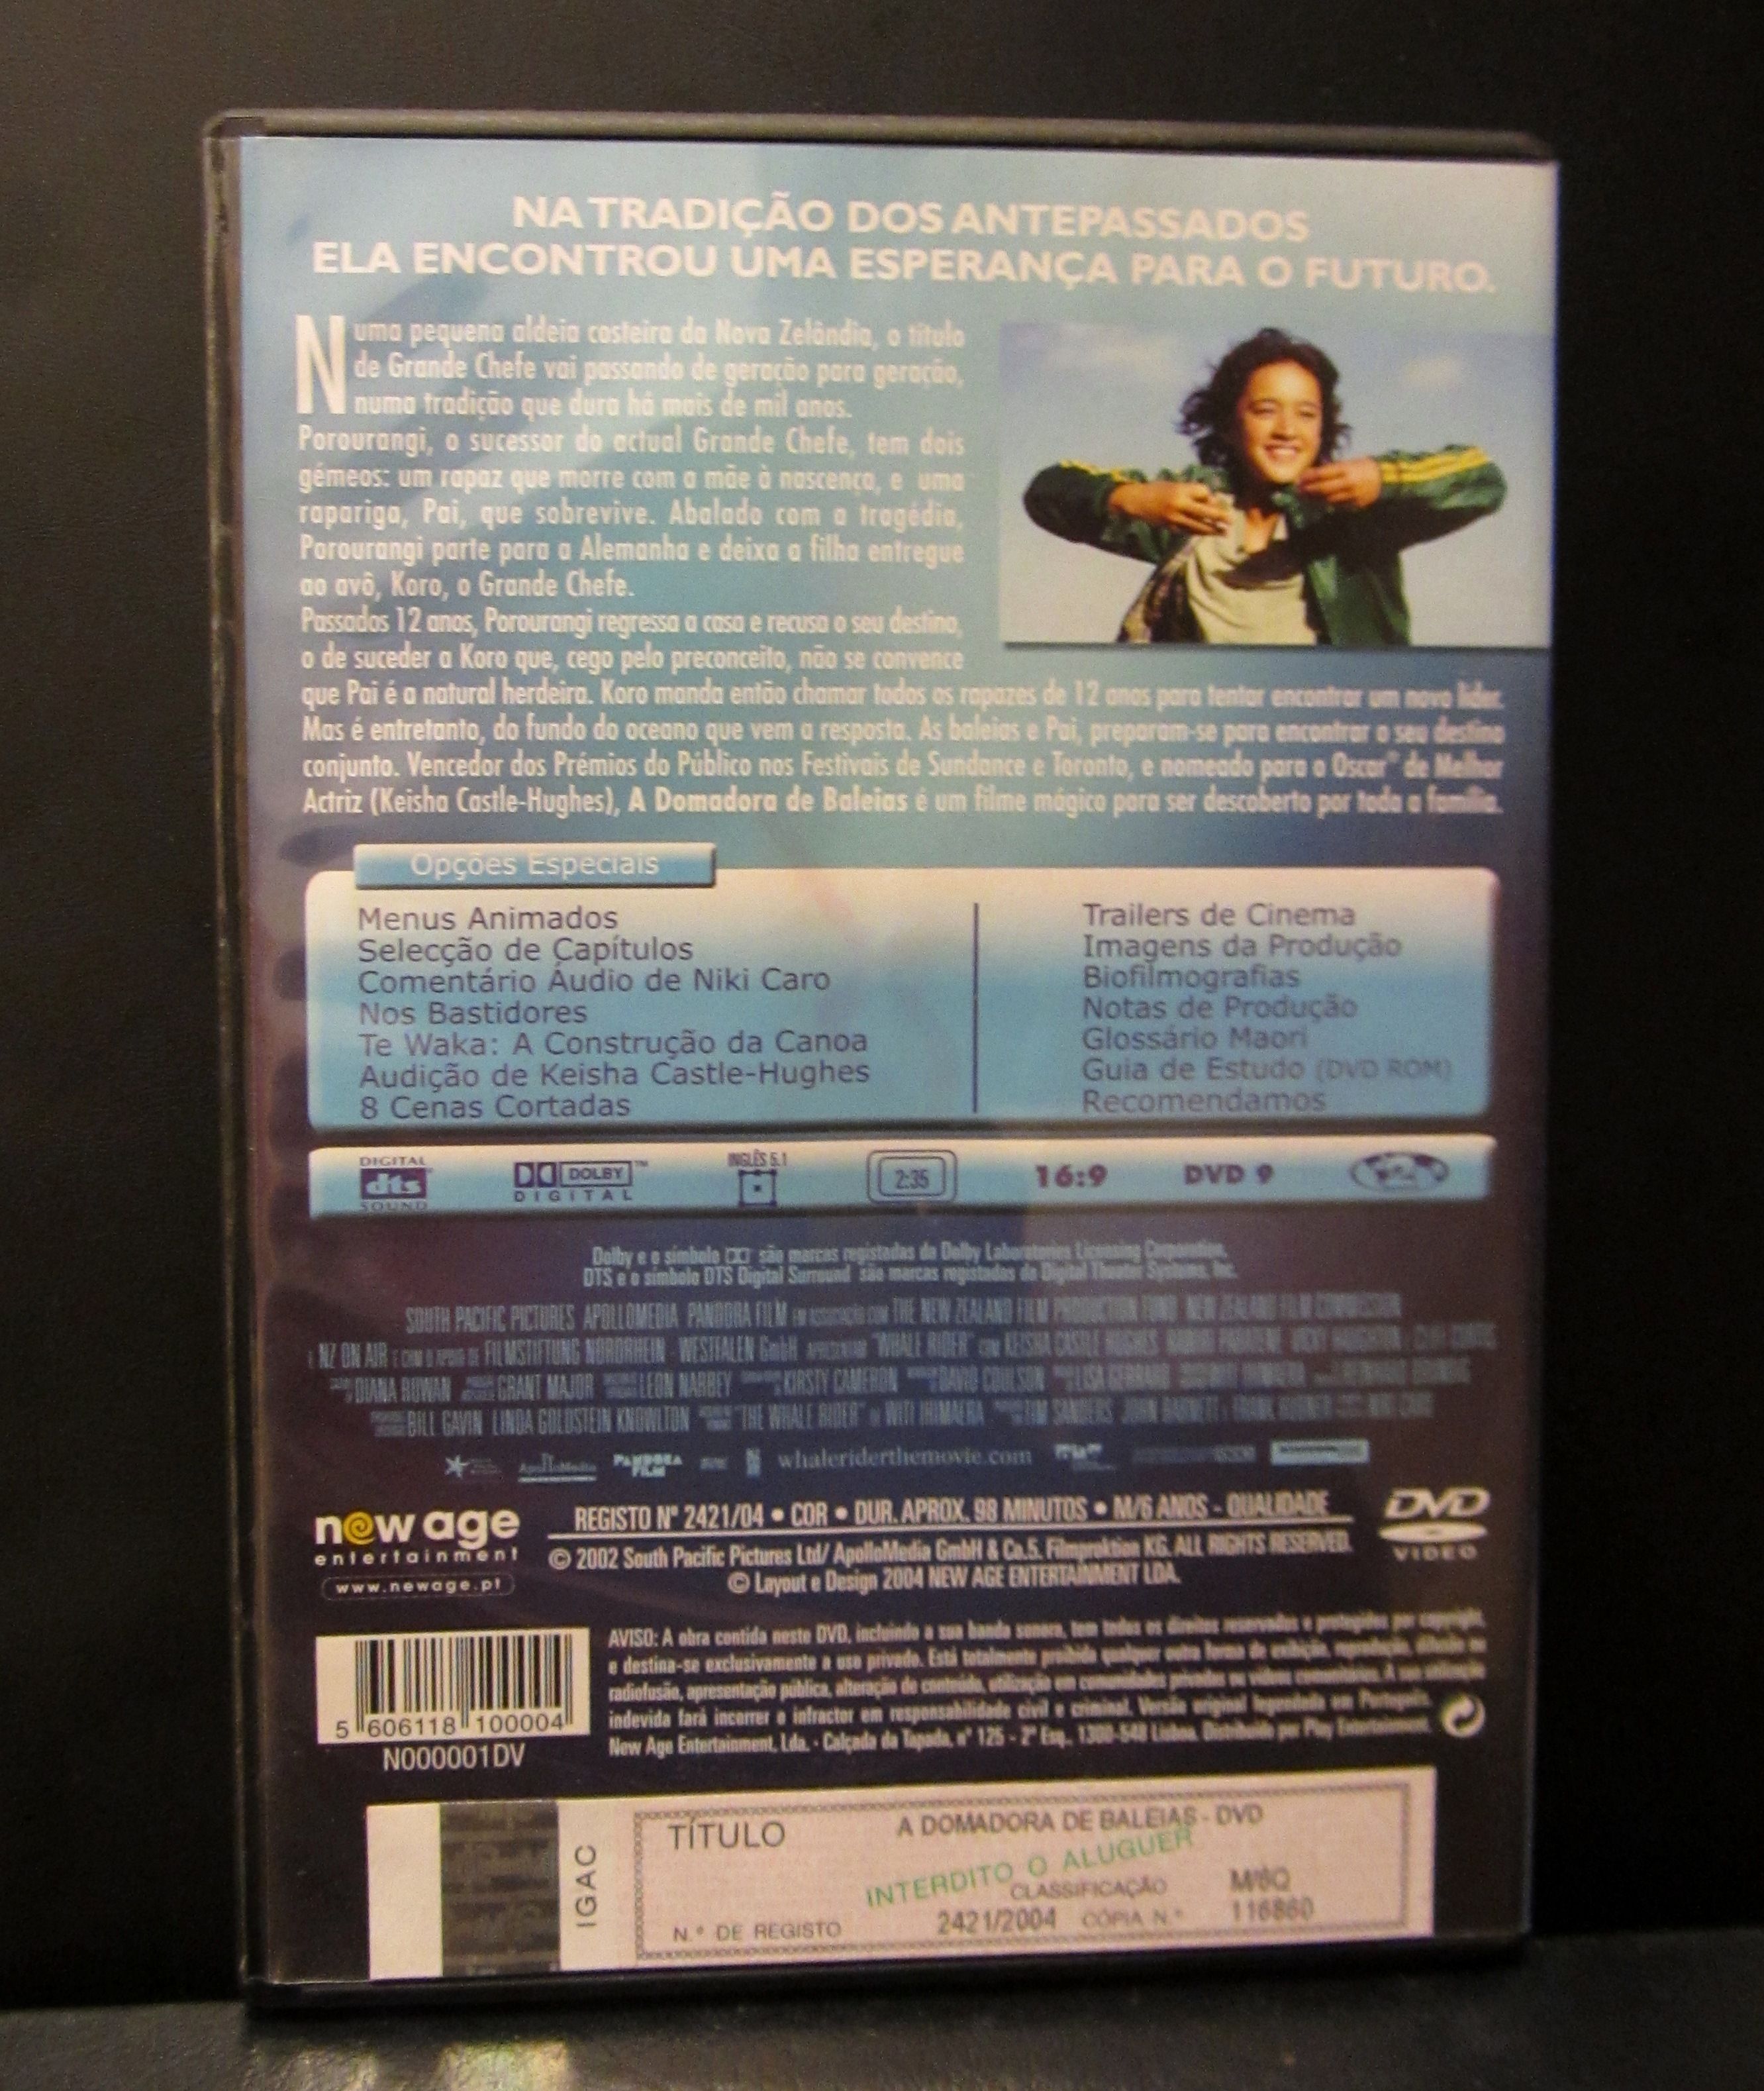 DVD "A Domadora de Baleias"